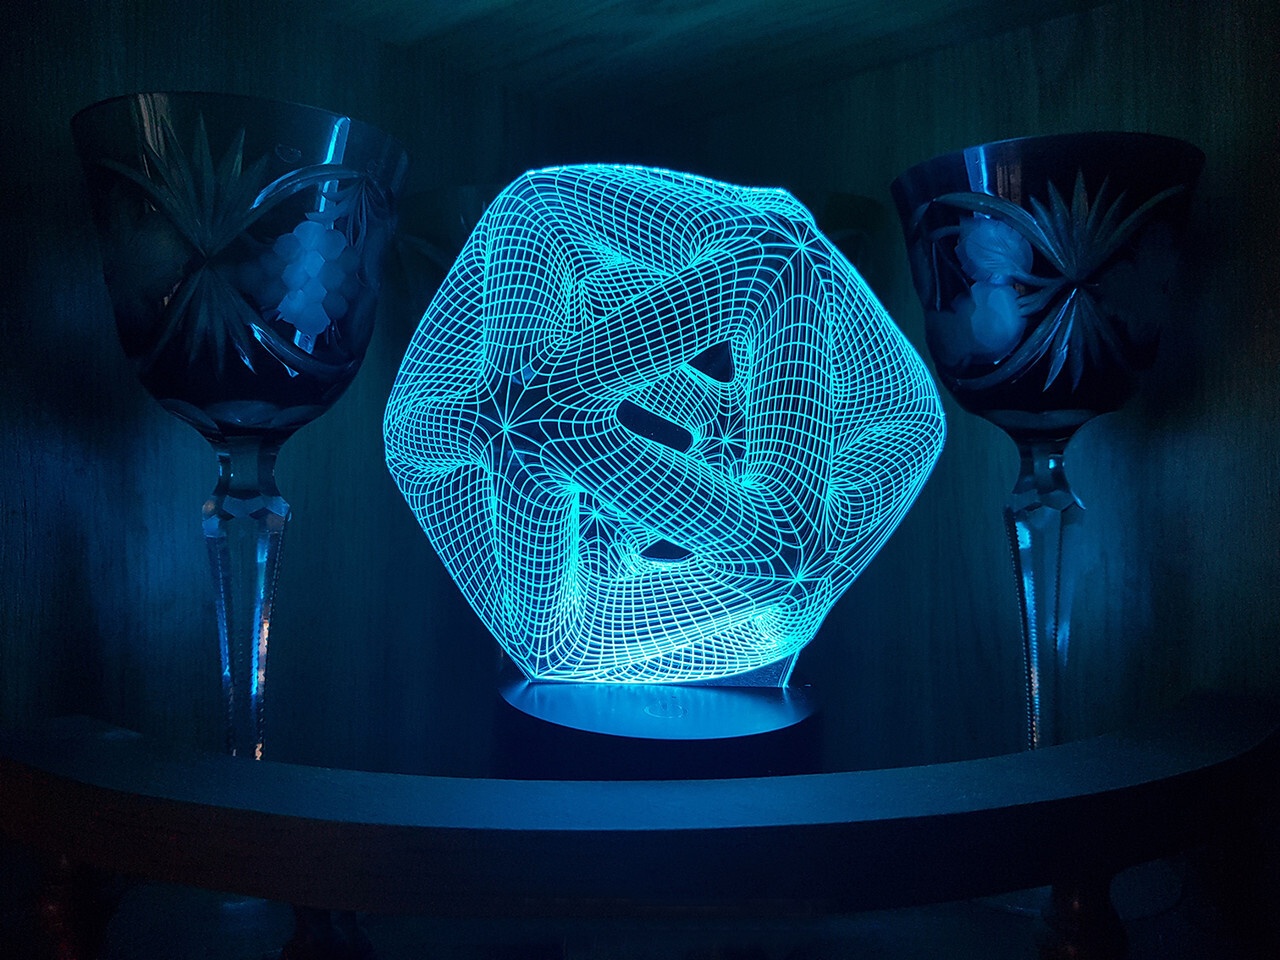 Lámpara de ilusión óptica acrílica con luz nocturna 3D de icosaedro cortada con láser